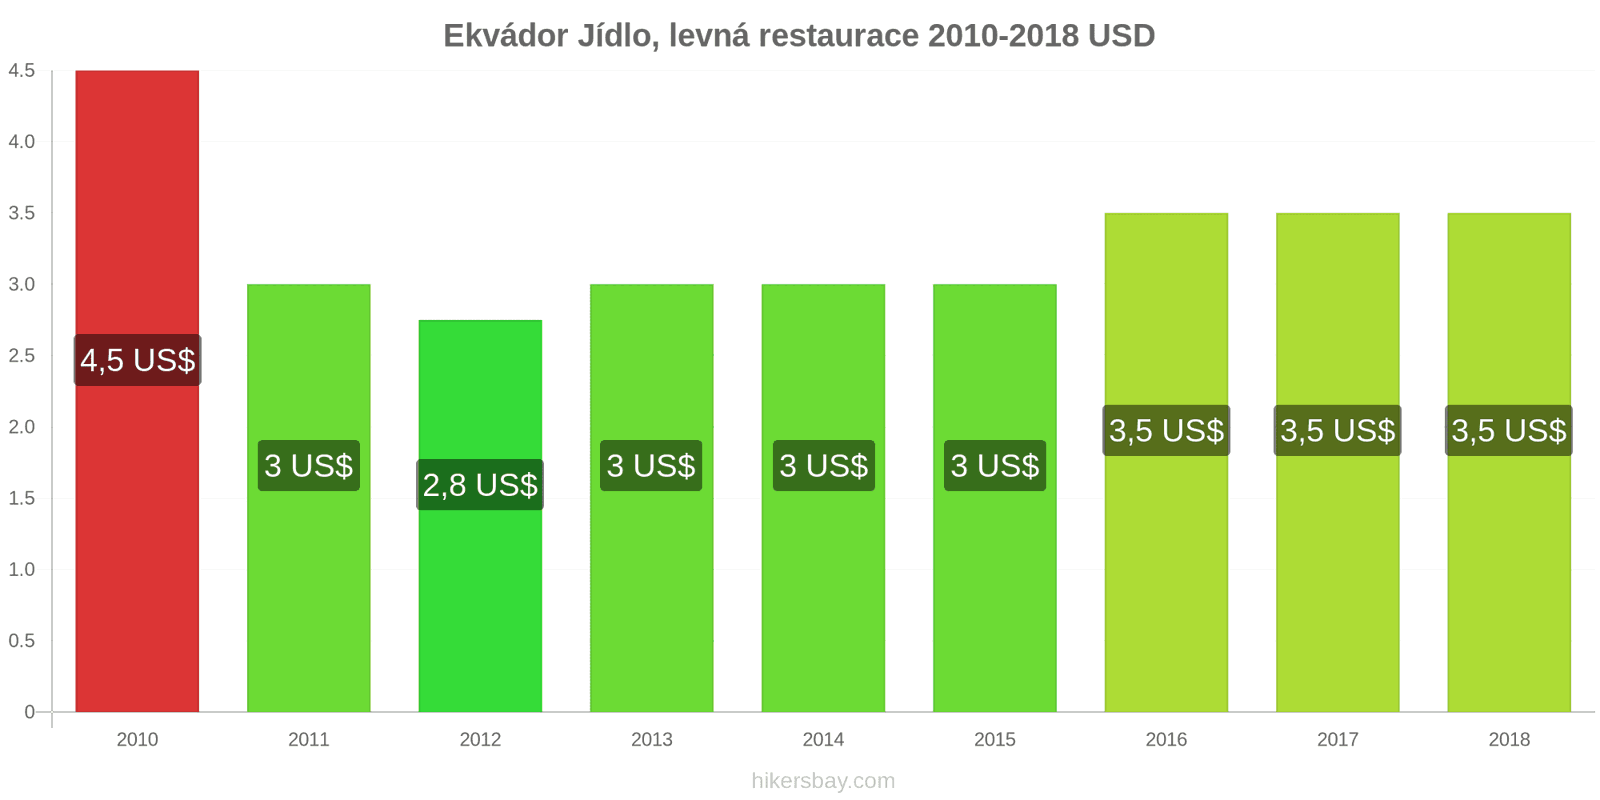 Ekvádor změny cen Jídlo v levné restauraci hikersbay.com